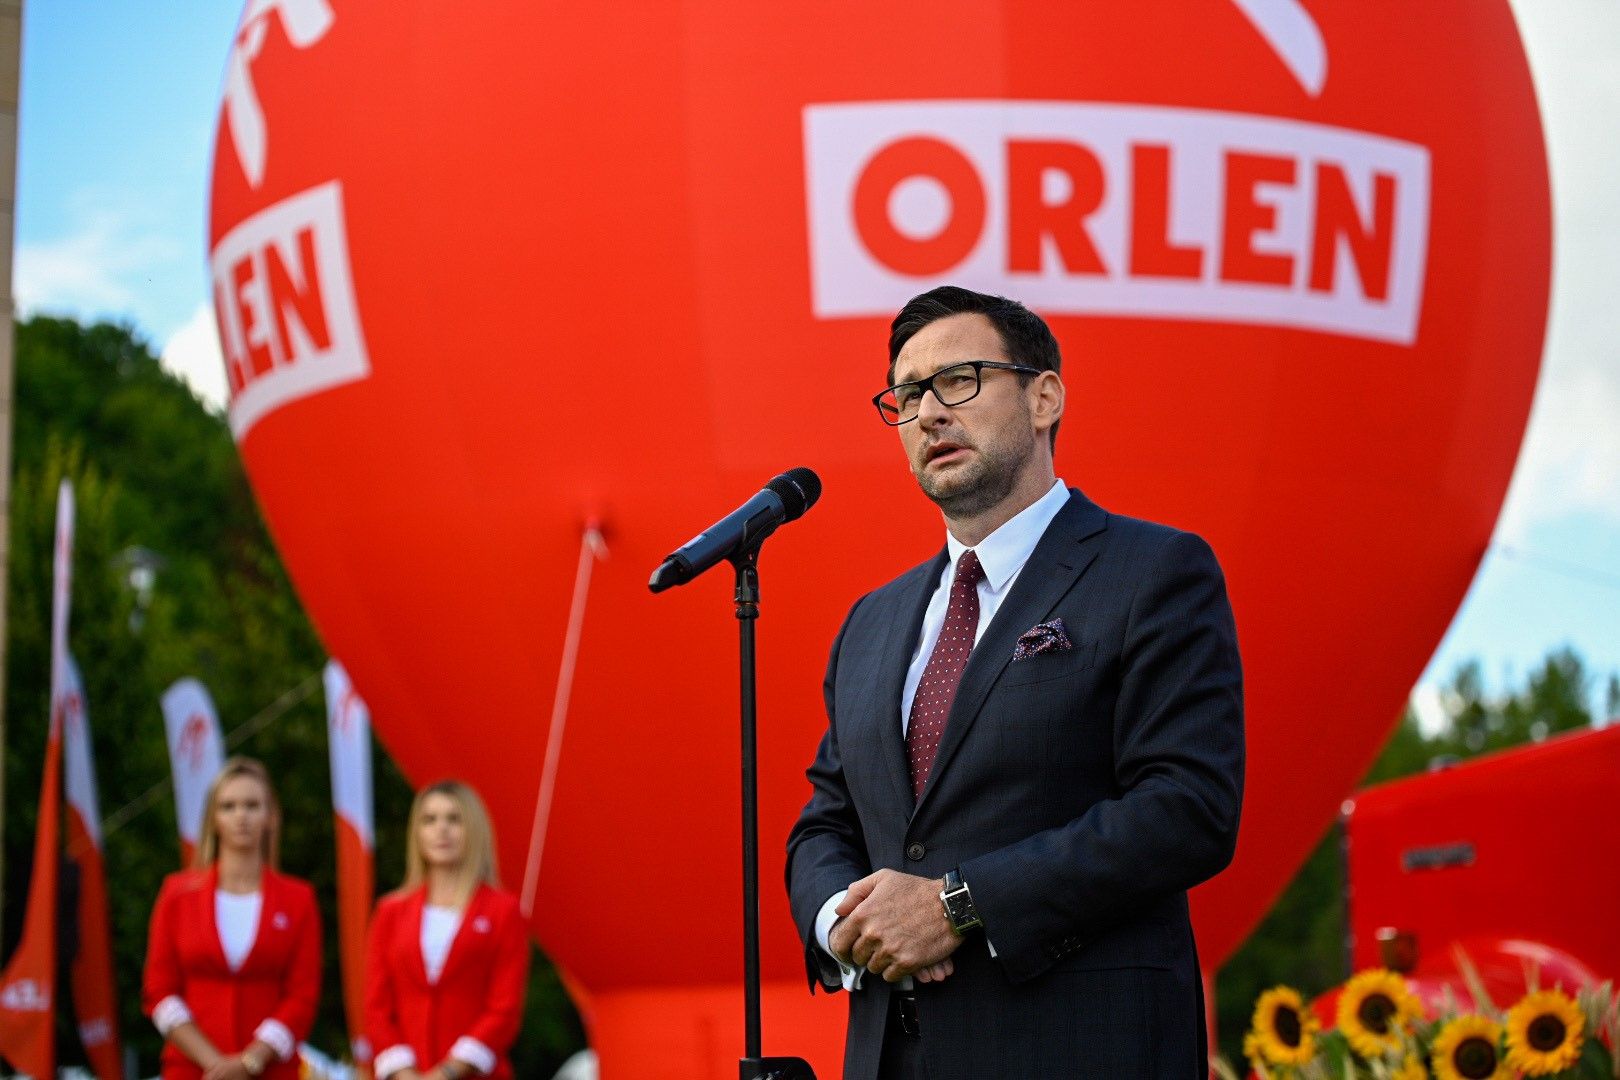 Даниэль Обайтек (Daniel Obajtek), президент правления PKN ORLEN